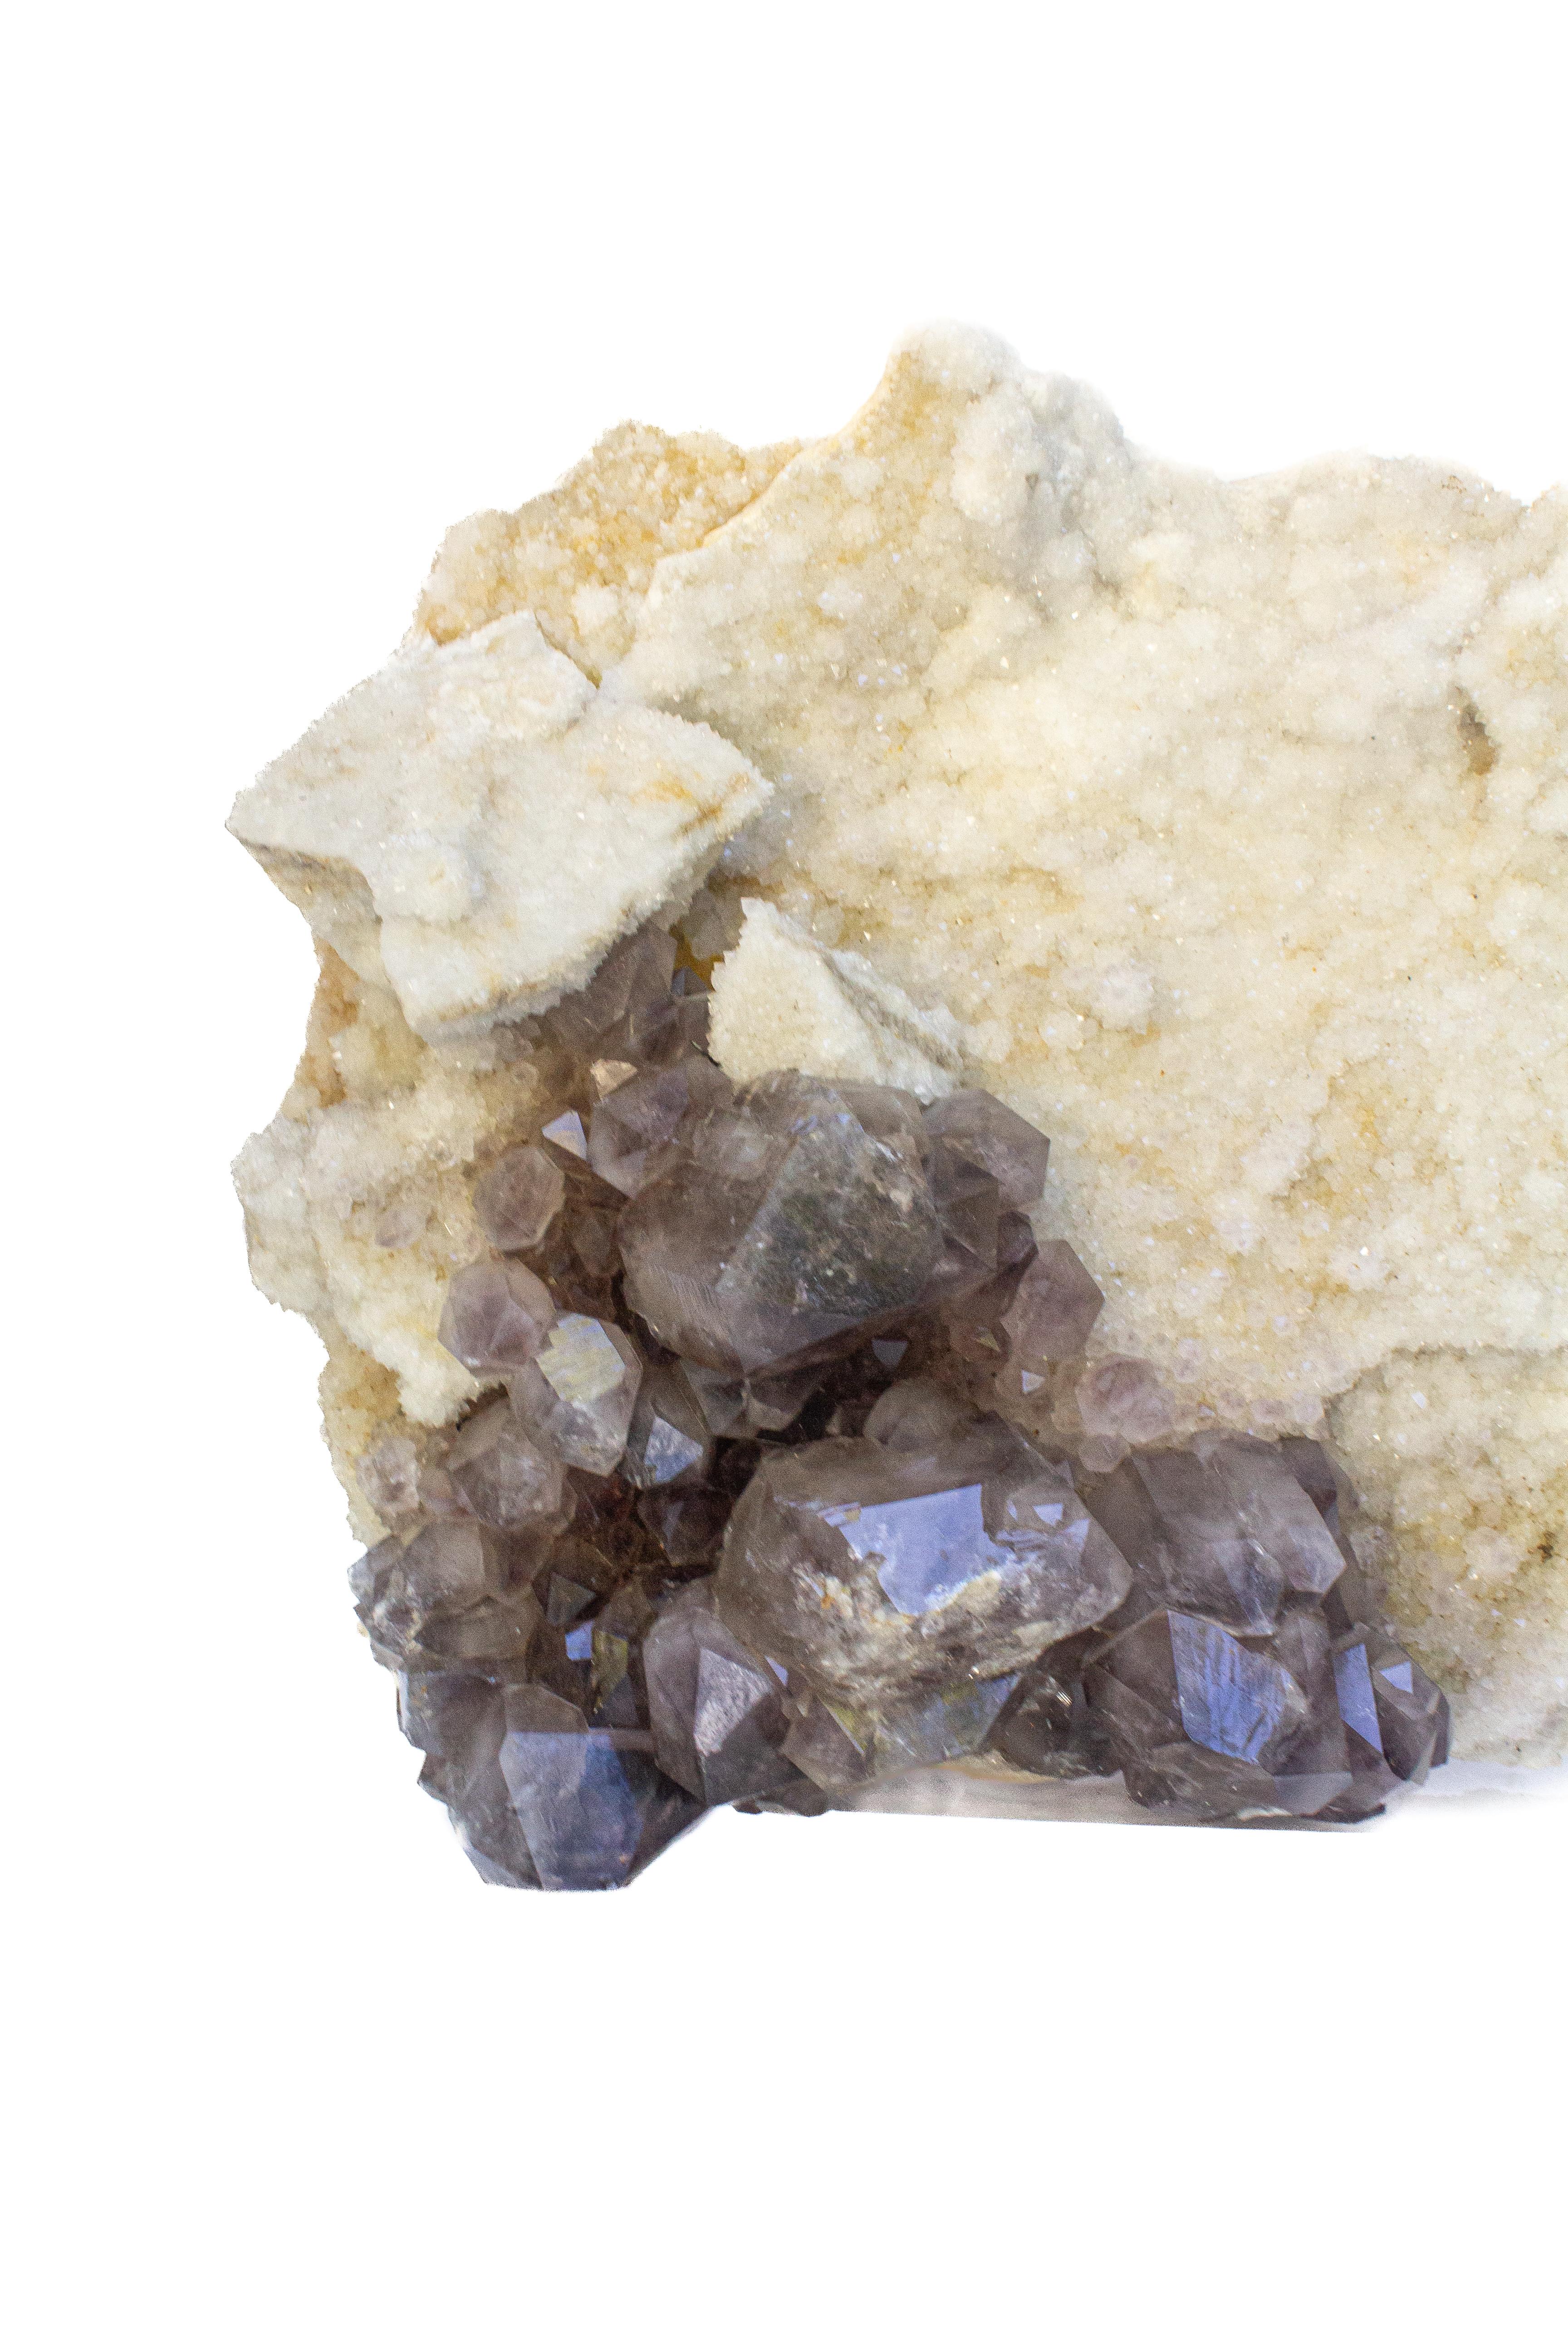 Großer Milchquarzkristall aus der Diamond Hill Mine, South Carolina, mit einer Überwucherung von Amethystkristallen. Die Amethystkristalle entstanden vor etwa 100 Millionen Jahren, nachdem sich die Milchquarzkristalle vor etwa 450 Millionen Jahren